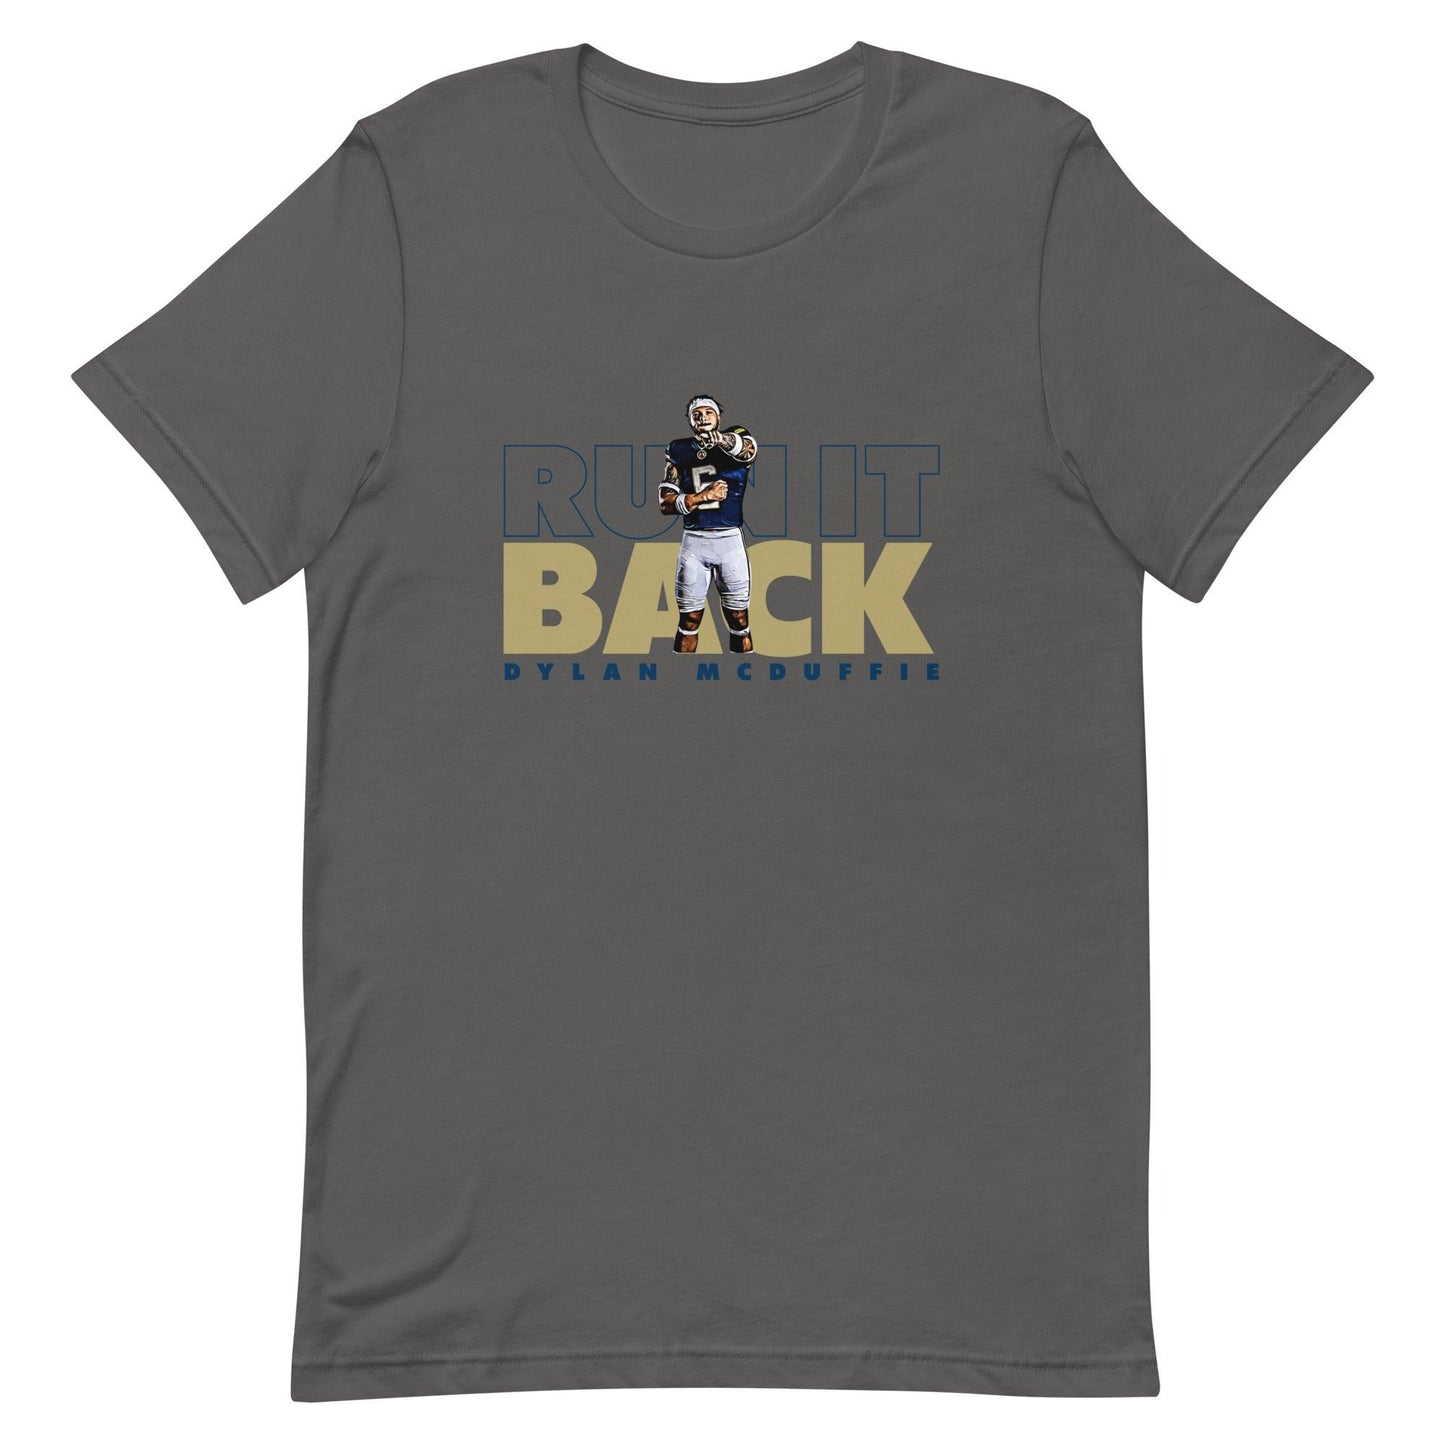 Dylan McDuffie "Run It Back" t-shirt - Fan Arch